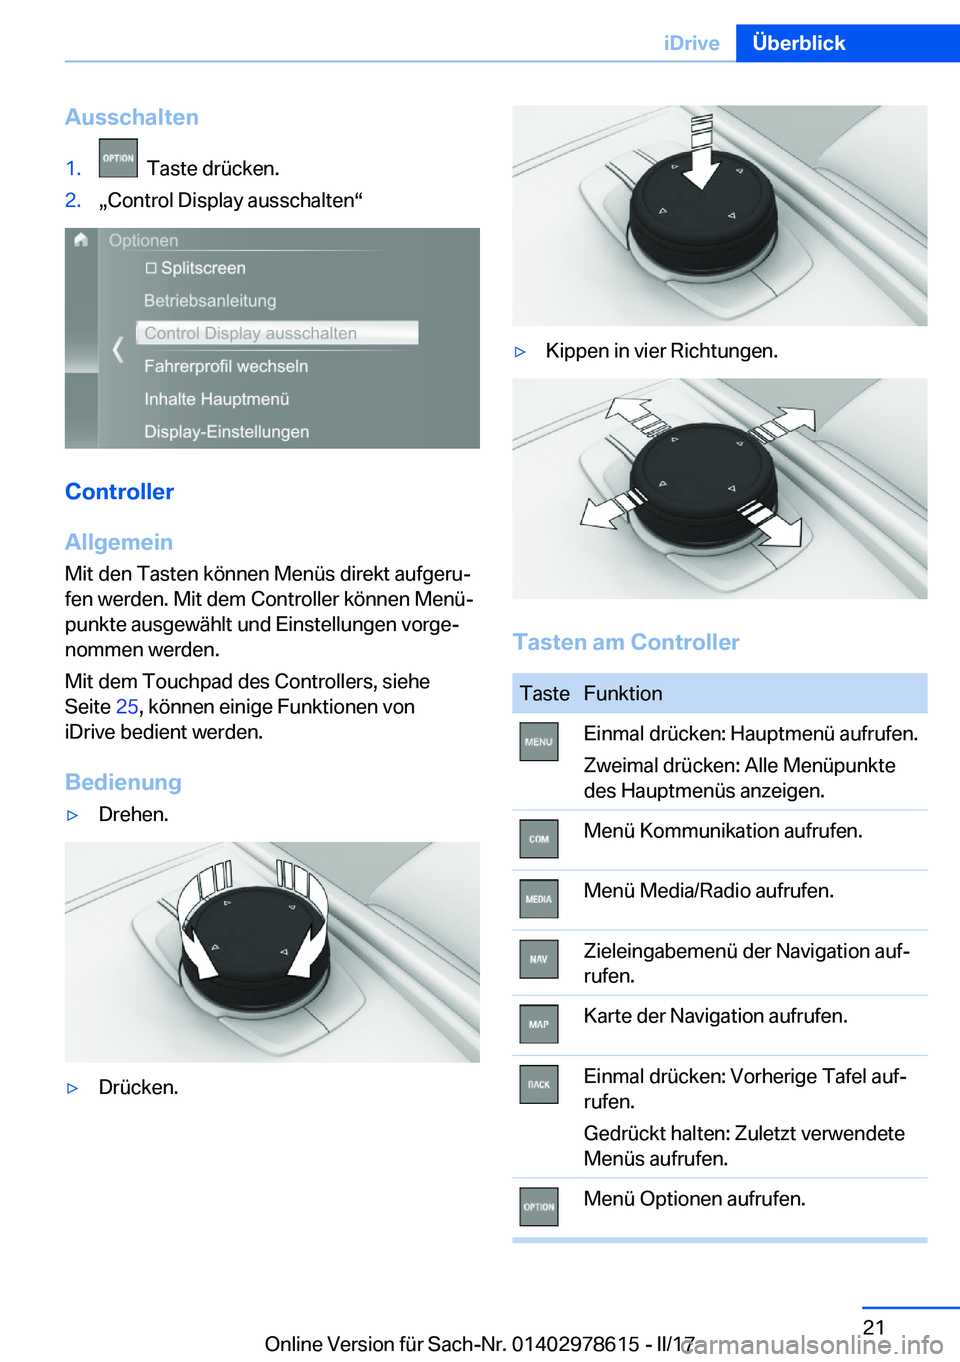 BMW 7 SERIES 2018  Betriebsanleitungen (in German) �A�u�s�s�c�h�a�l�t�e�n�1�.� � �T�a�s�t�e� �d�r�ü�c�k�e�n�.�2�.x�C�o�n�t�r�o�l� �D�i�s�p�l�a�y� �a�u�s�s�c�h�a�l�t�e�nv
�C�o�n�t�r�o�l�l�e�r
�A�l�l�g�e�m�e�i�n �M�i�t� �d�e�n� �T�a�s�t�e�n� �k�ö�n�